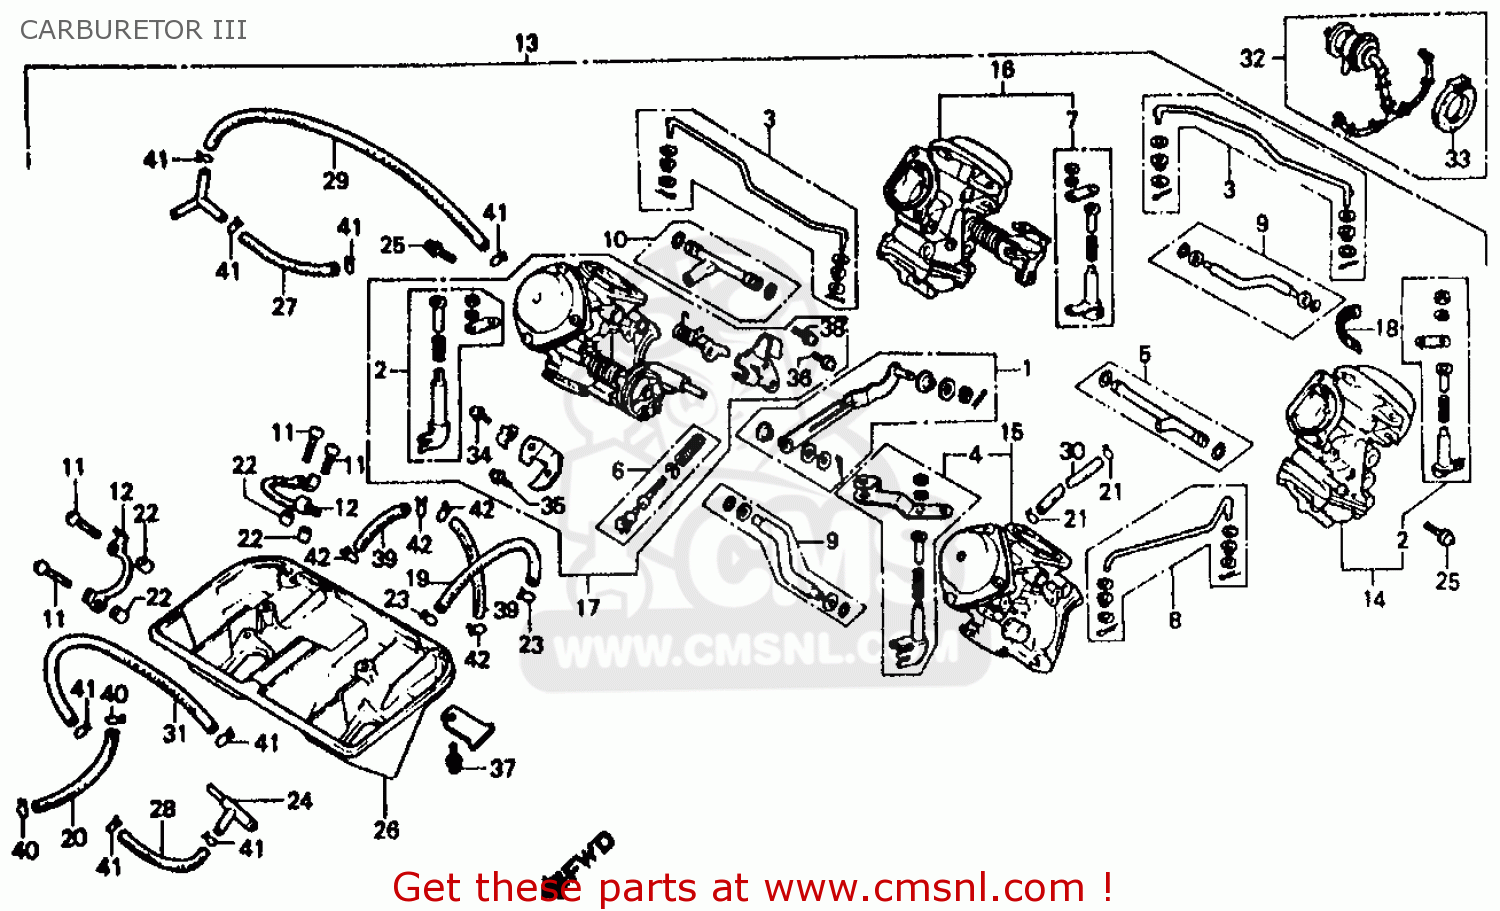 1986 Honda interceptor 500 parts #5